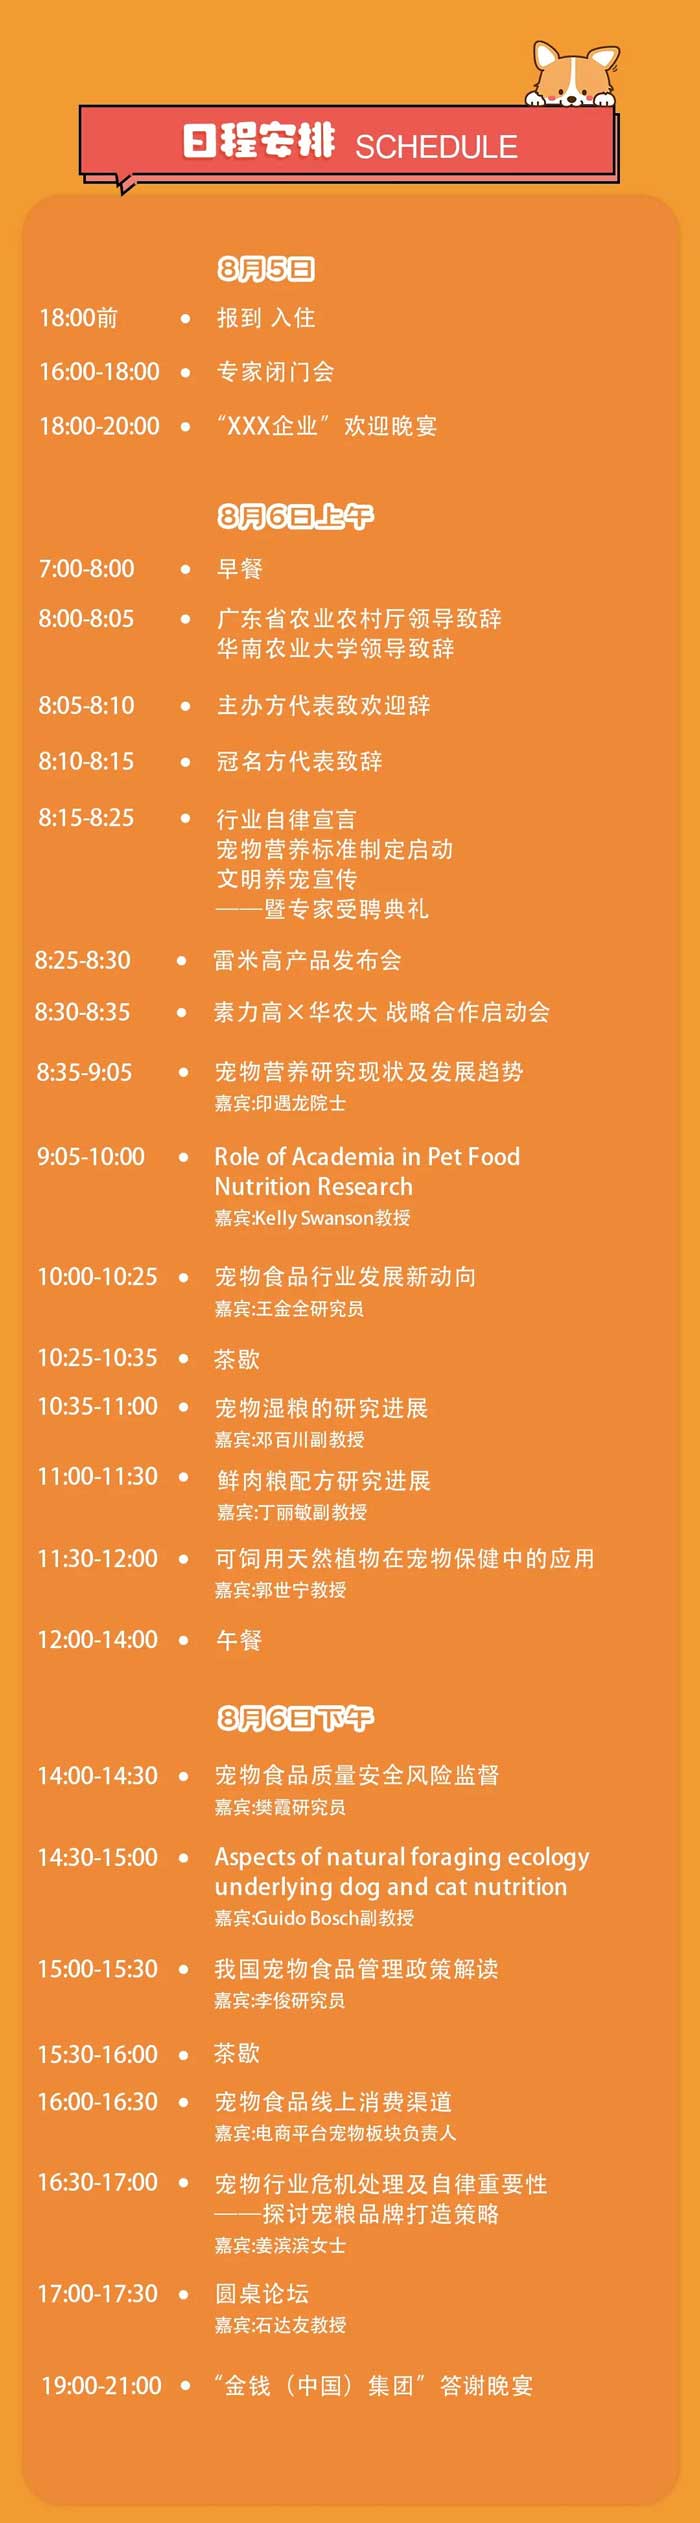 首届国际宠物营养与产业(广州)峰会将于8月5日在广州举办